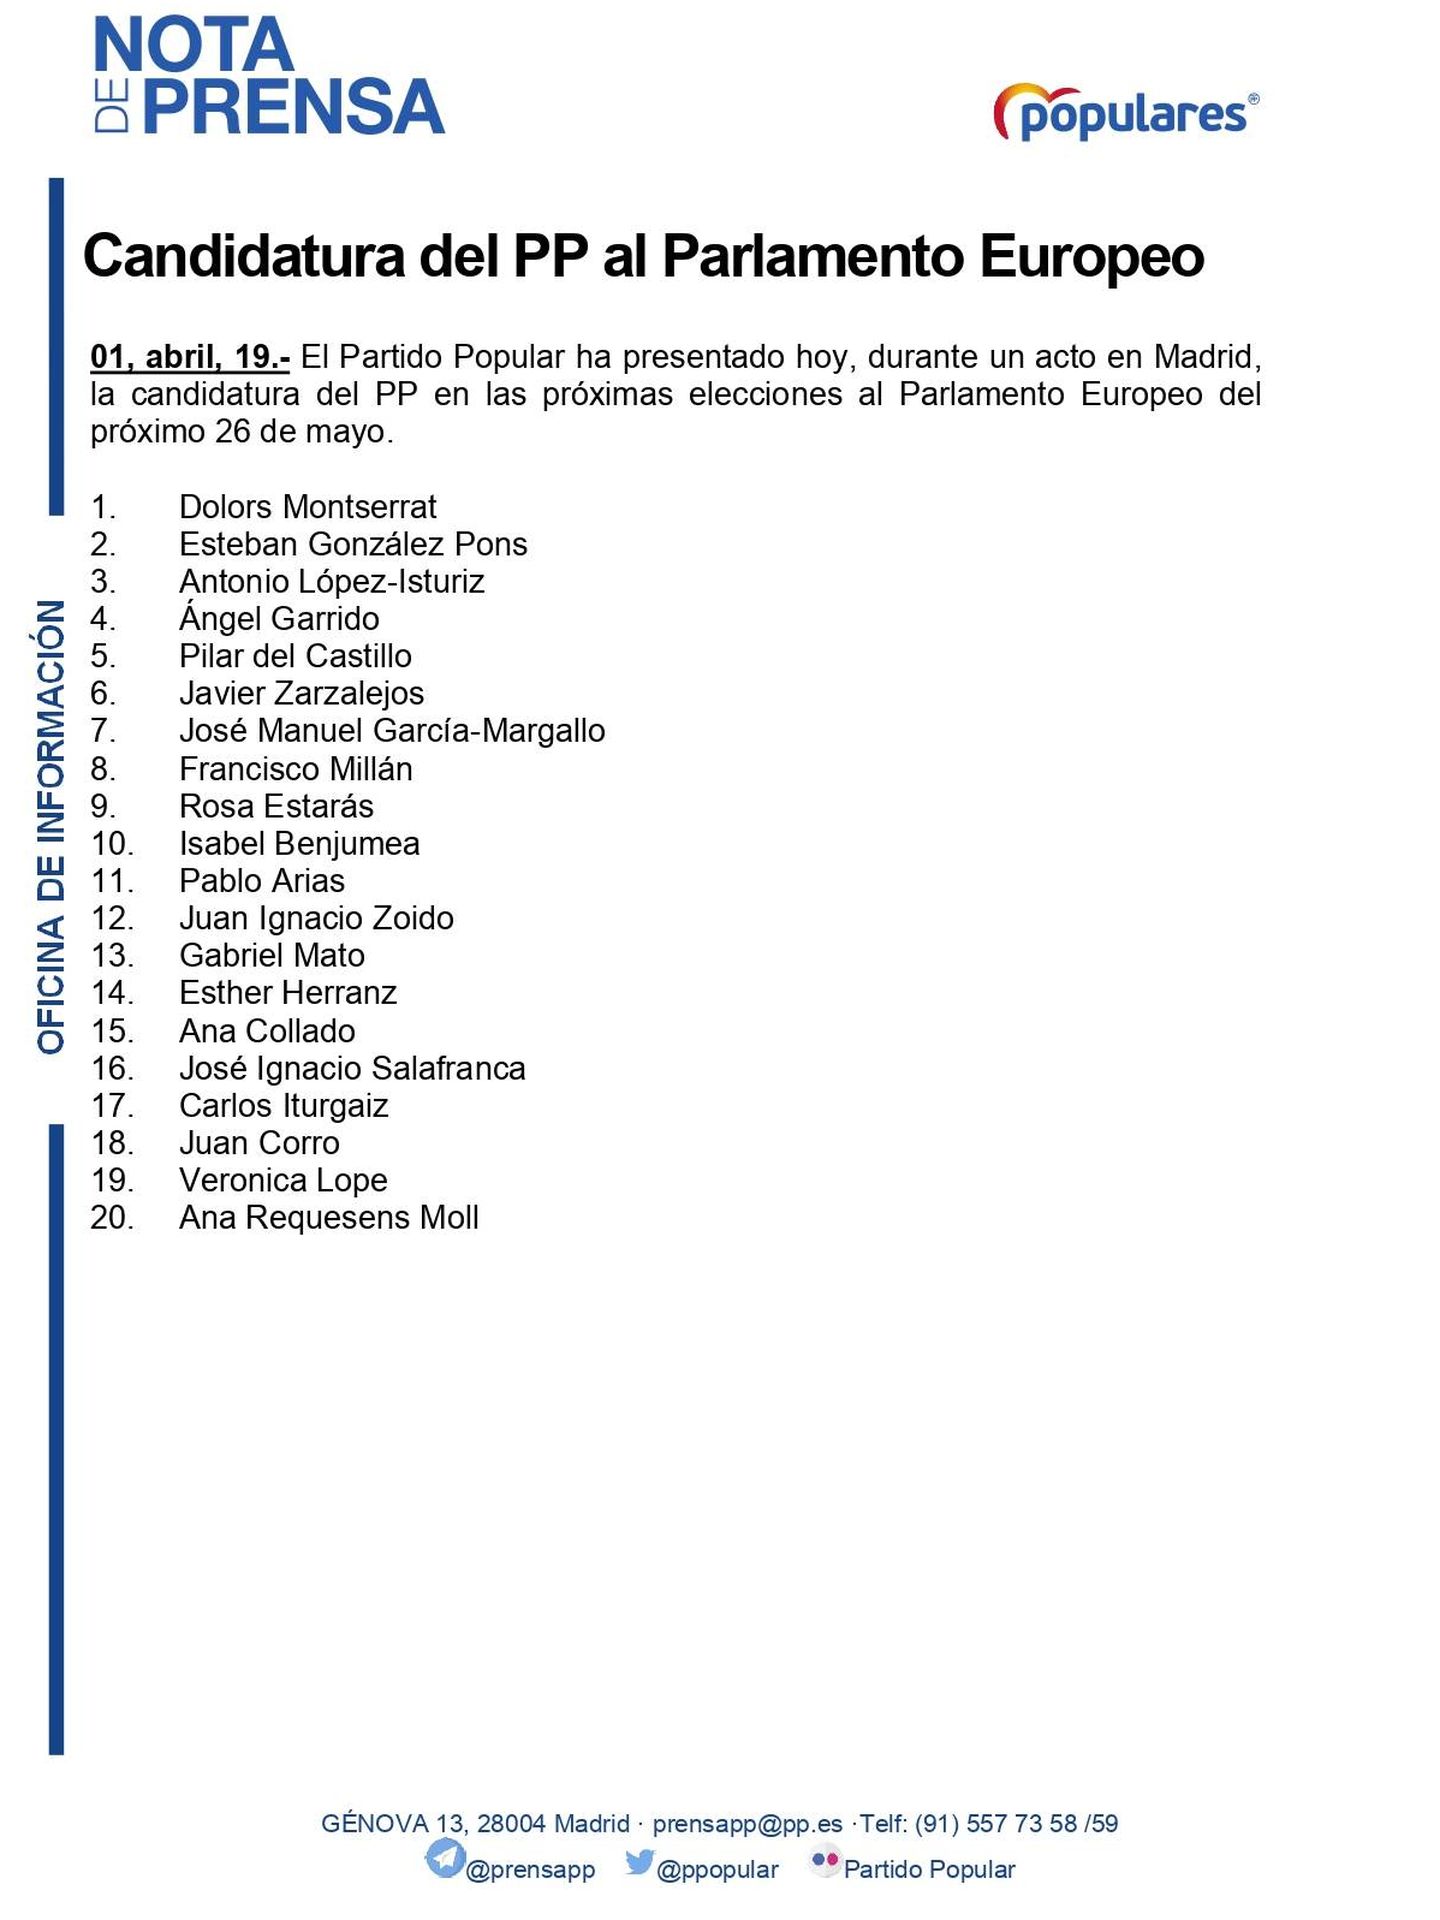 Pinche para ver la lista del PP al Parlamento Europeo.